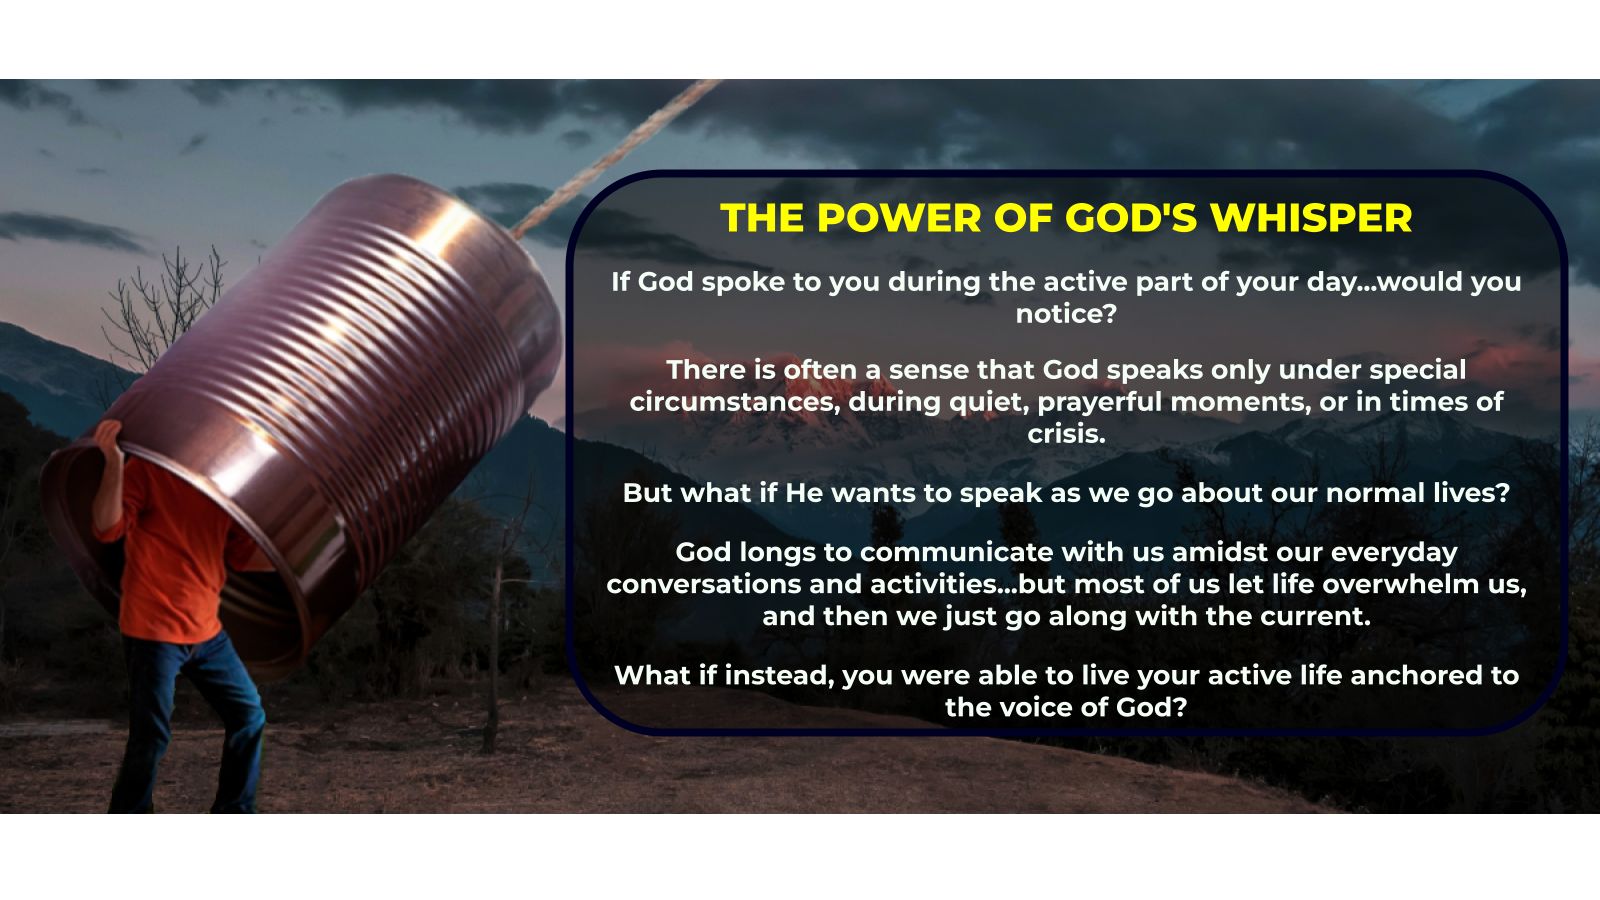 THE POWER OF GOD'S WHISPER